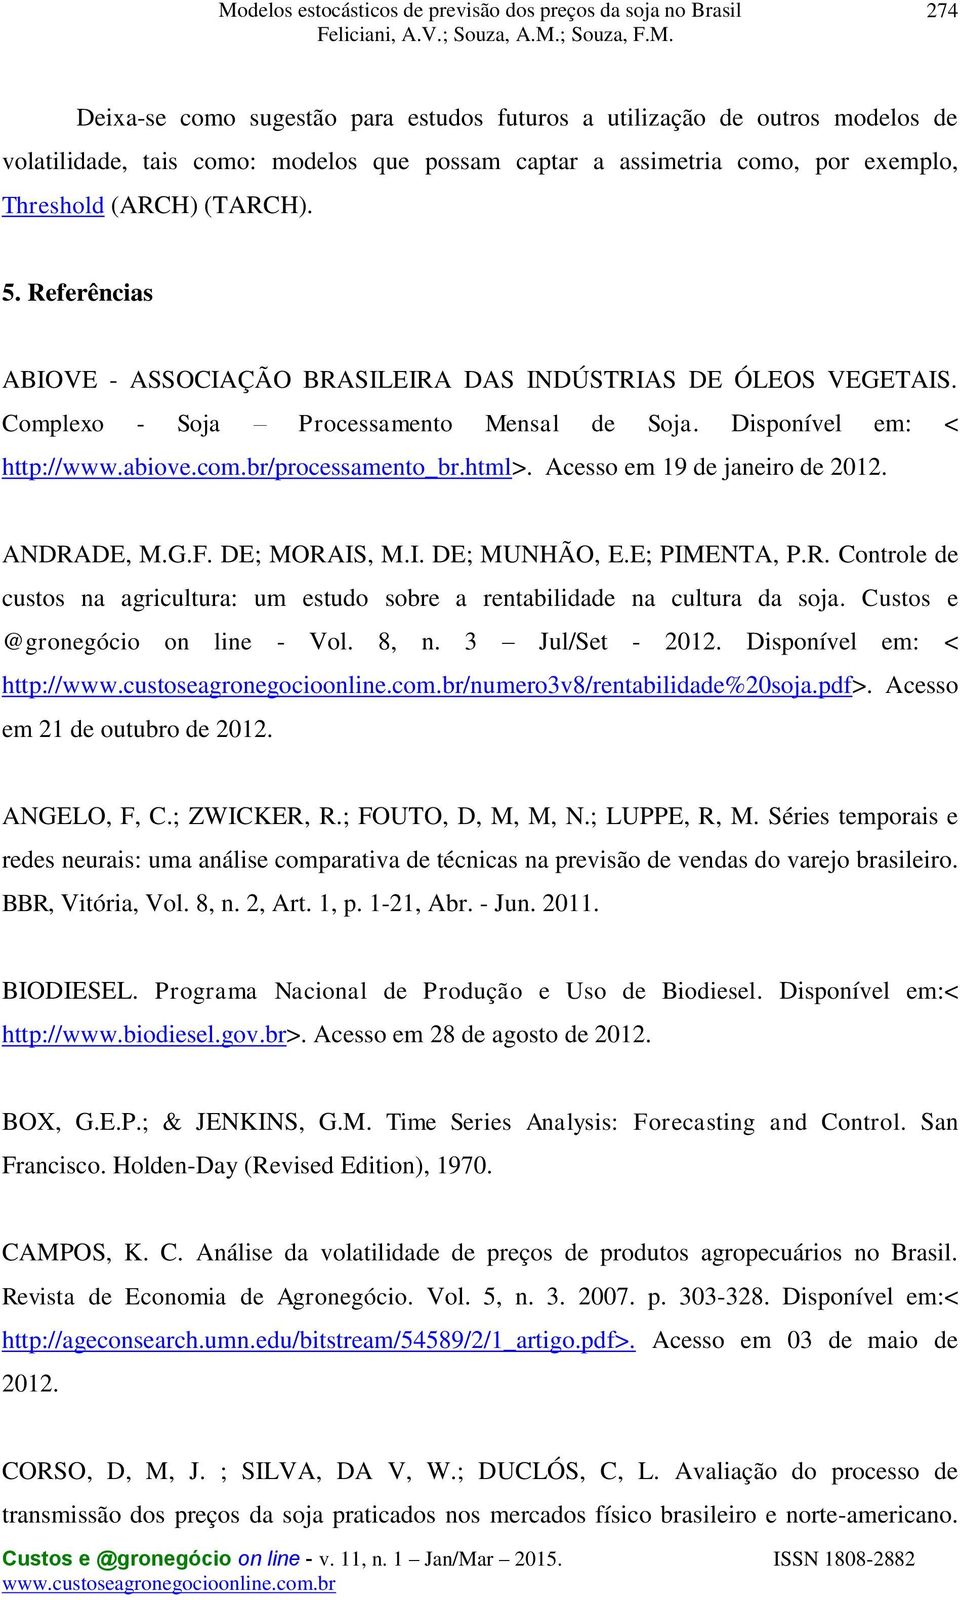 Acesso em 19 de janeiro de 2012. ANDRADE, M.G.F. DE; MORAIS, M.I. DE; MUNHÃO, E.E; PIMENTA, P.R. Conrole de cusos na agriculura: um esudo sobre a renabilidade na culura da soja.